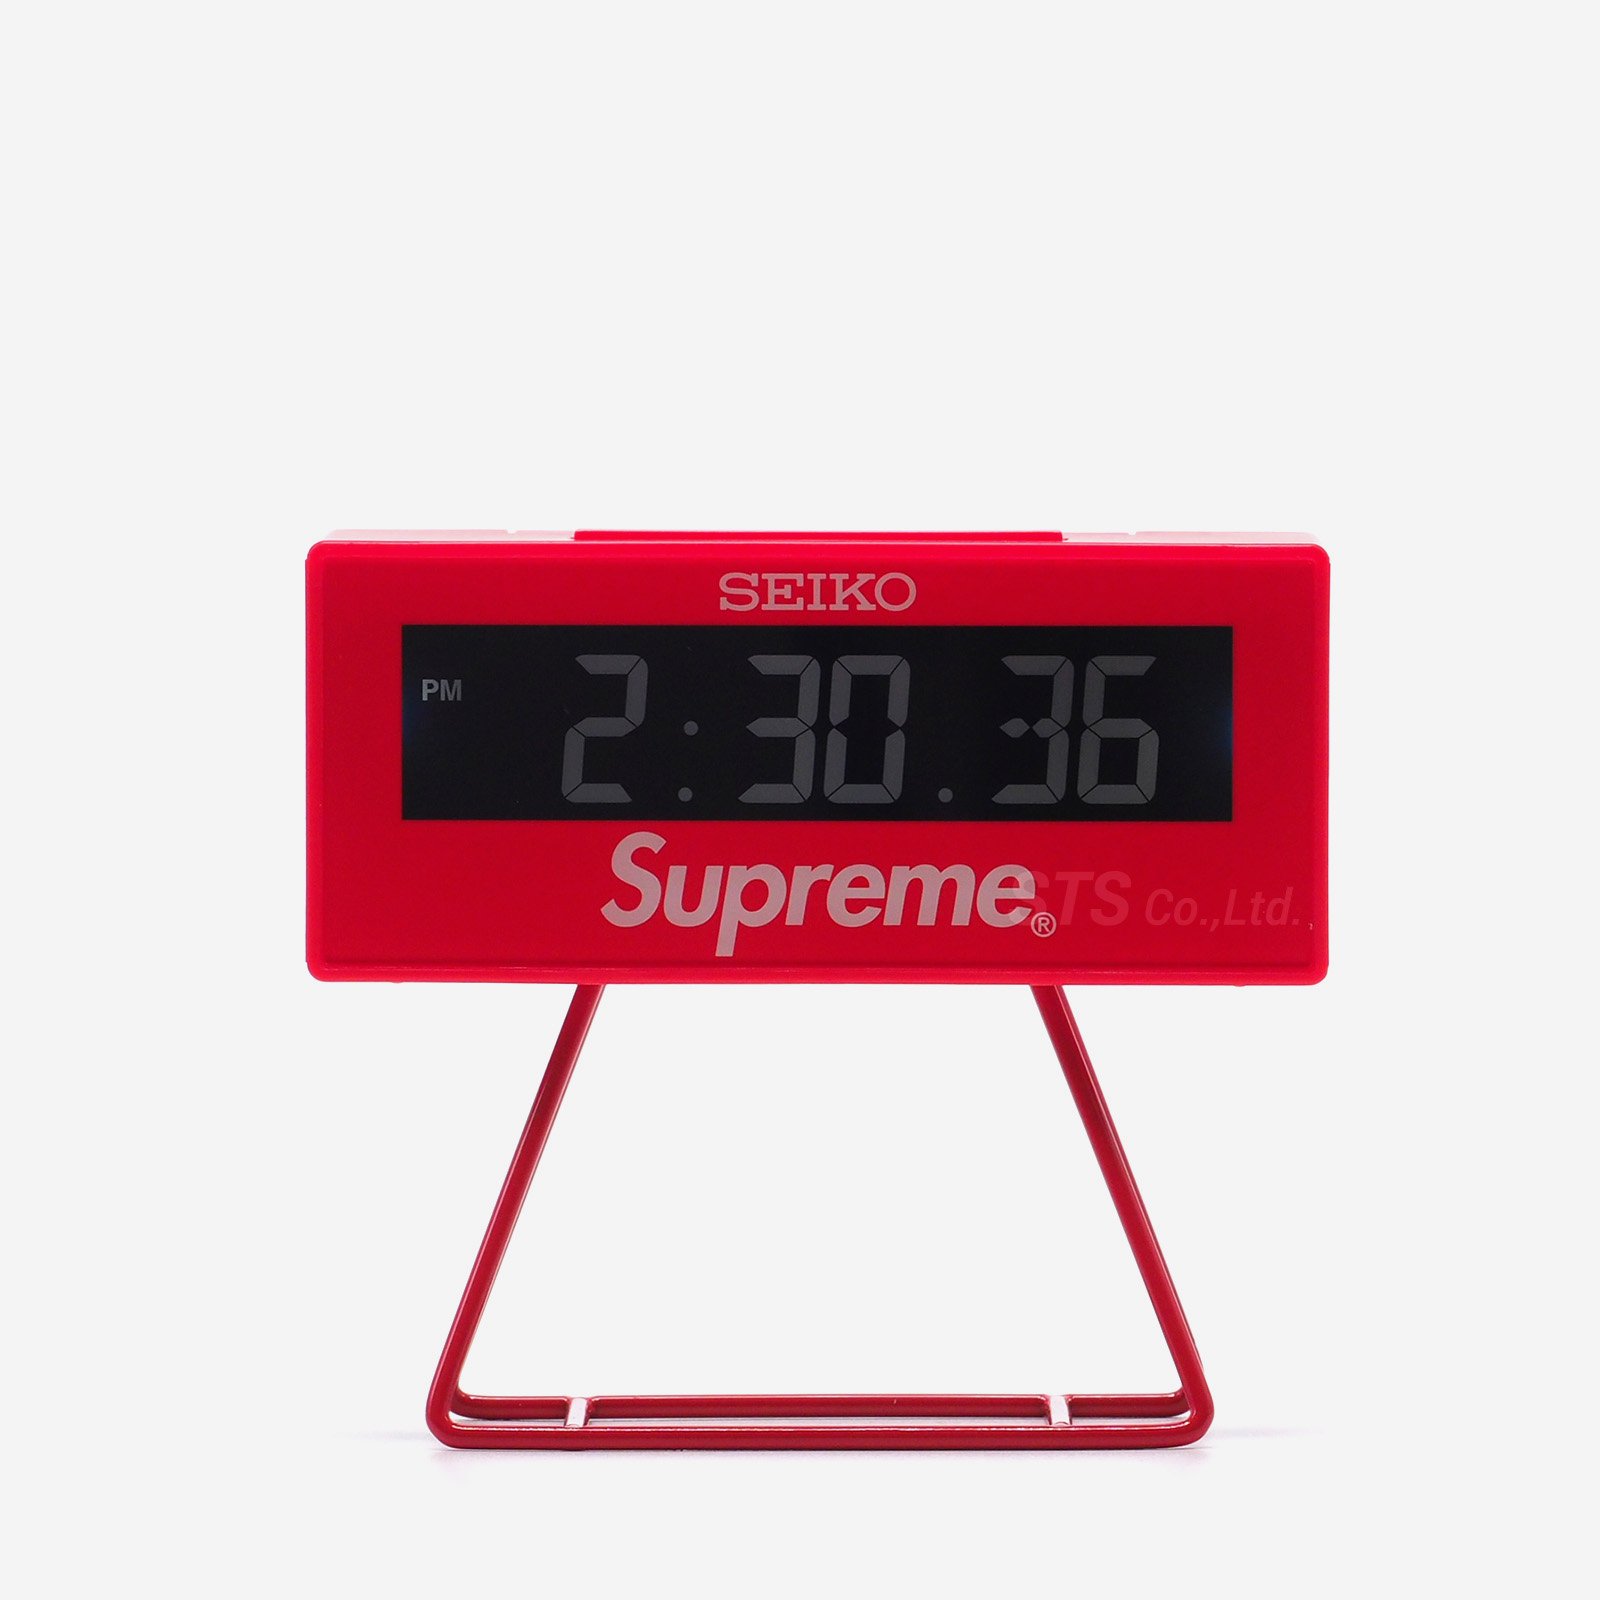 Supreme/Seiko Marathon Clock - UG.SHAFT